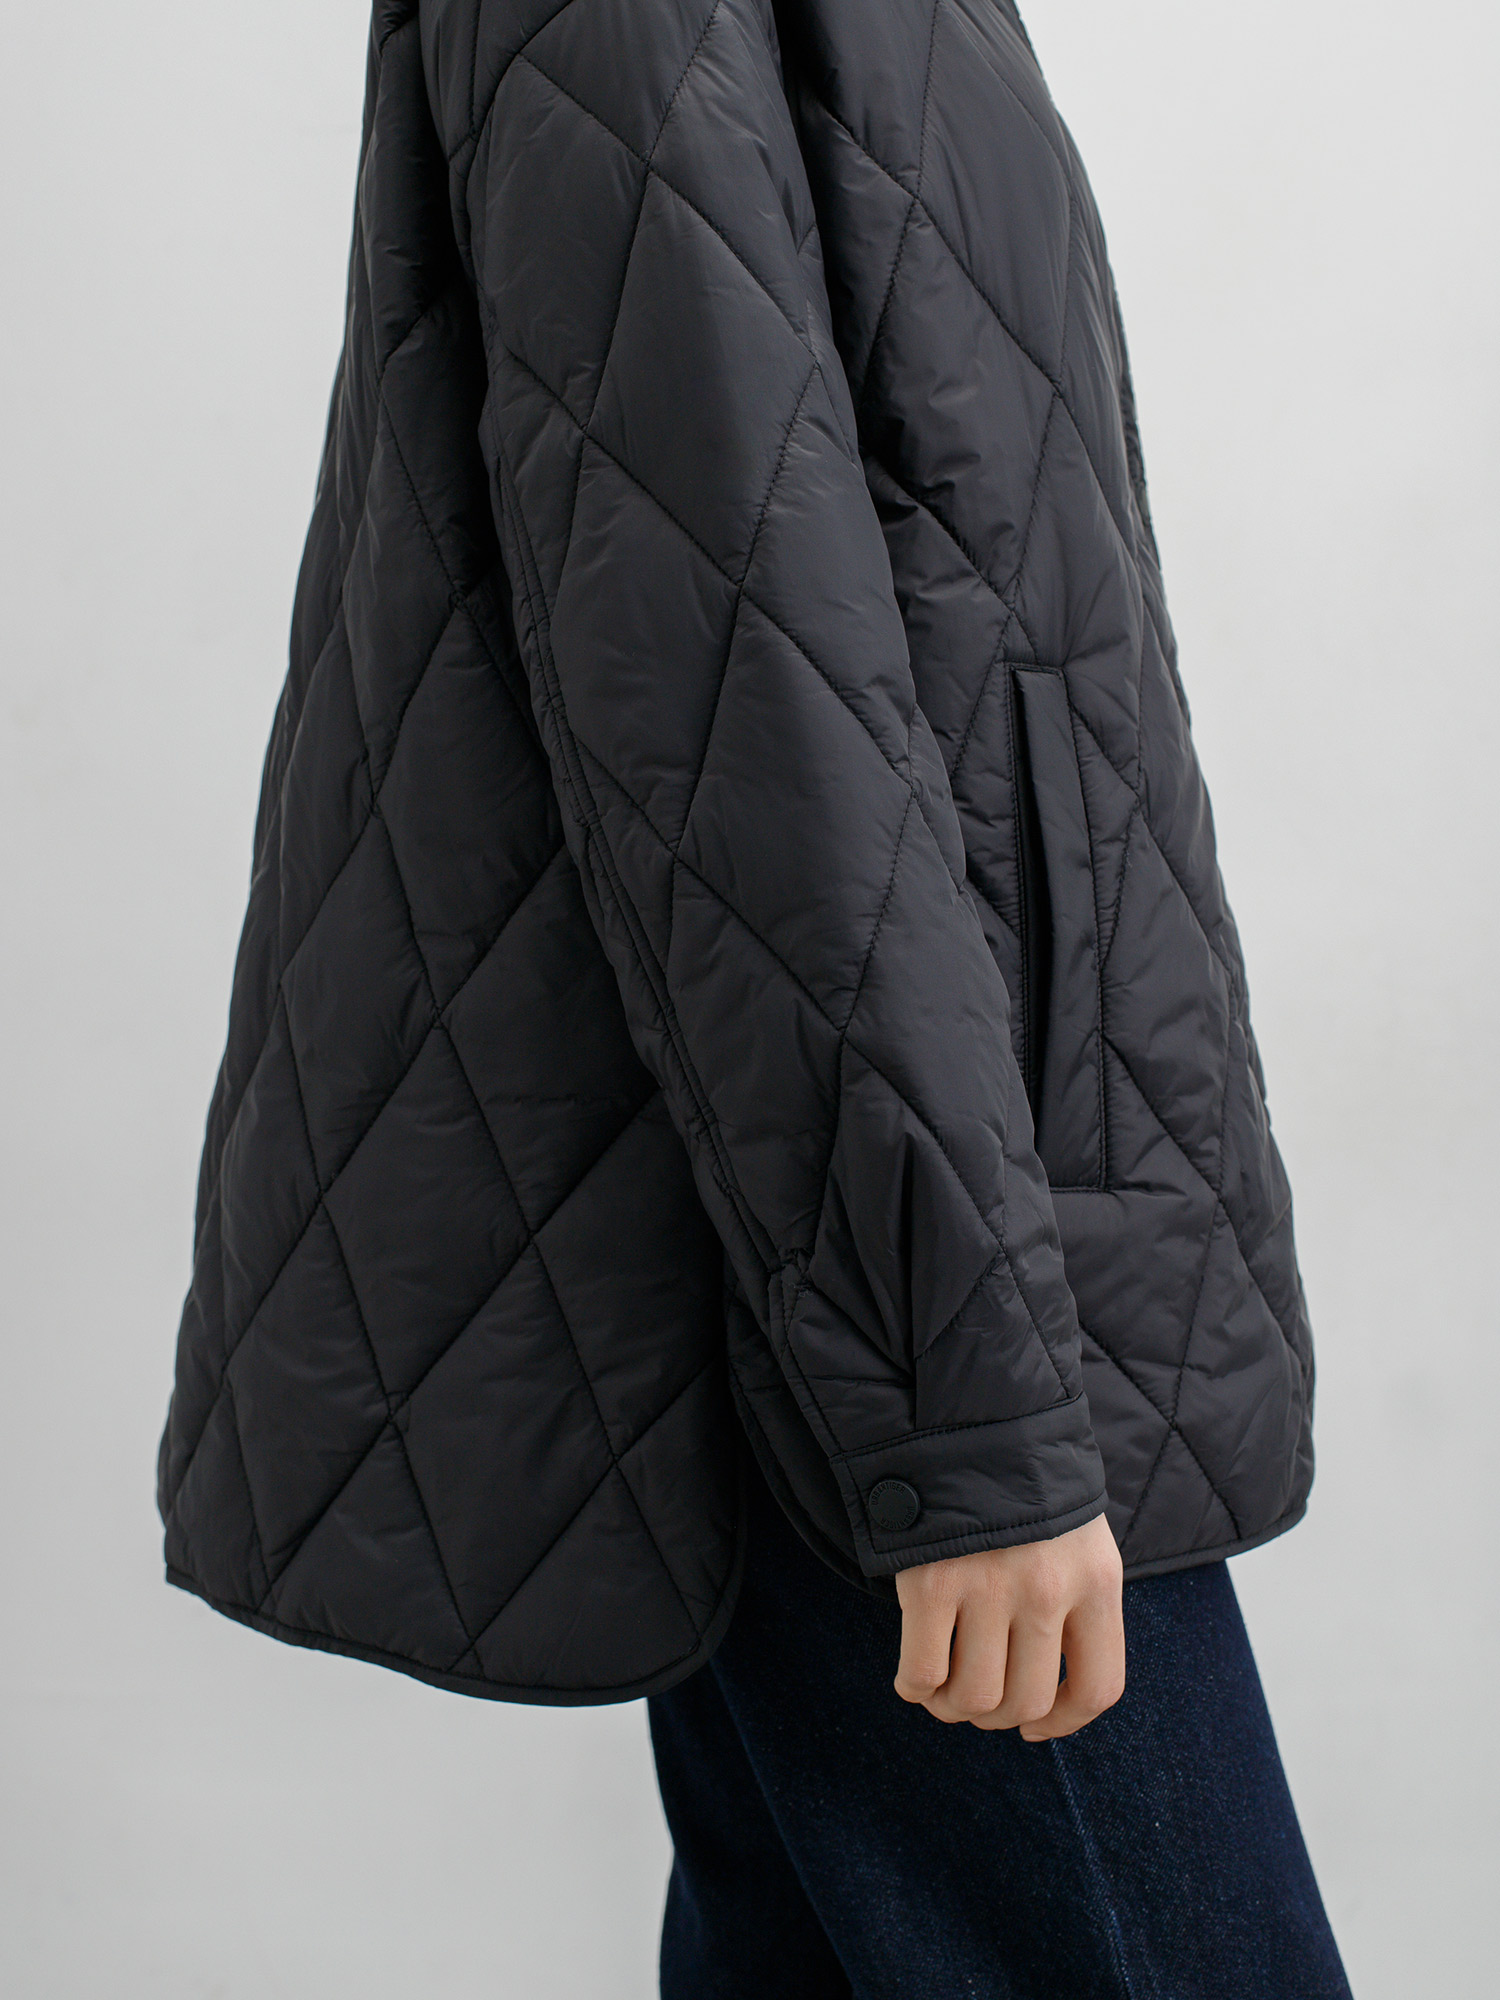 Женская стеганая куртка Soft Nylon. Изображение 5